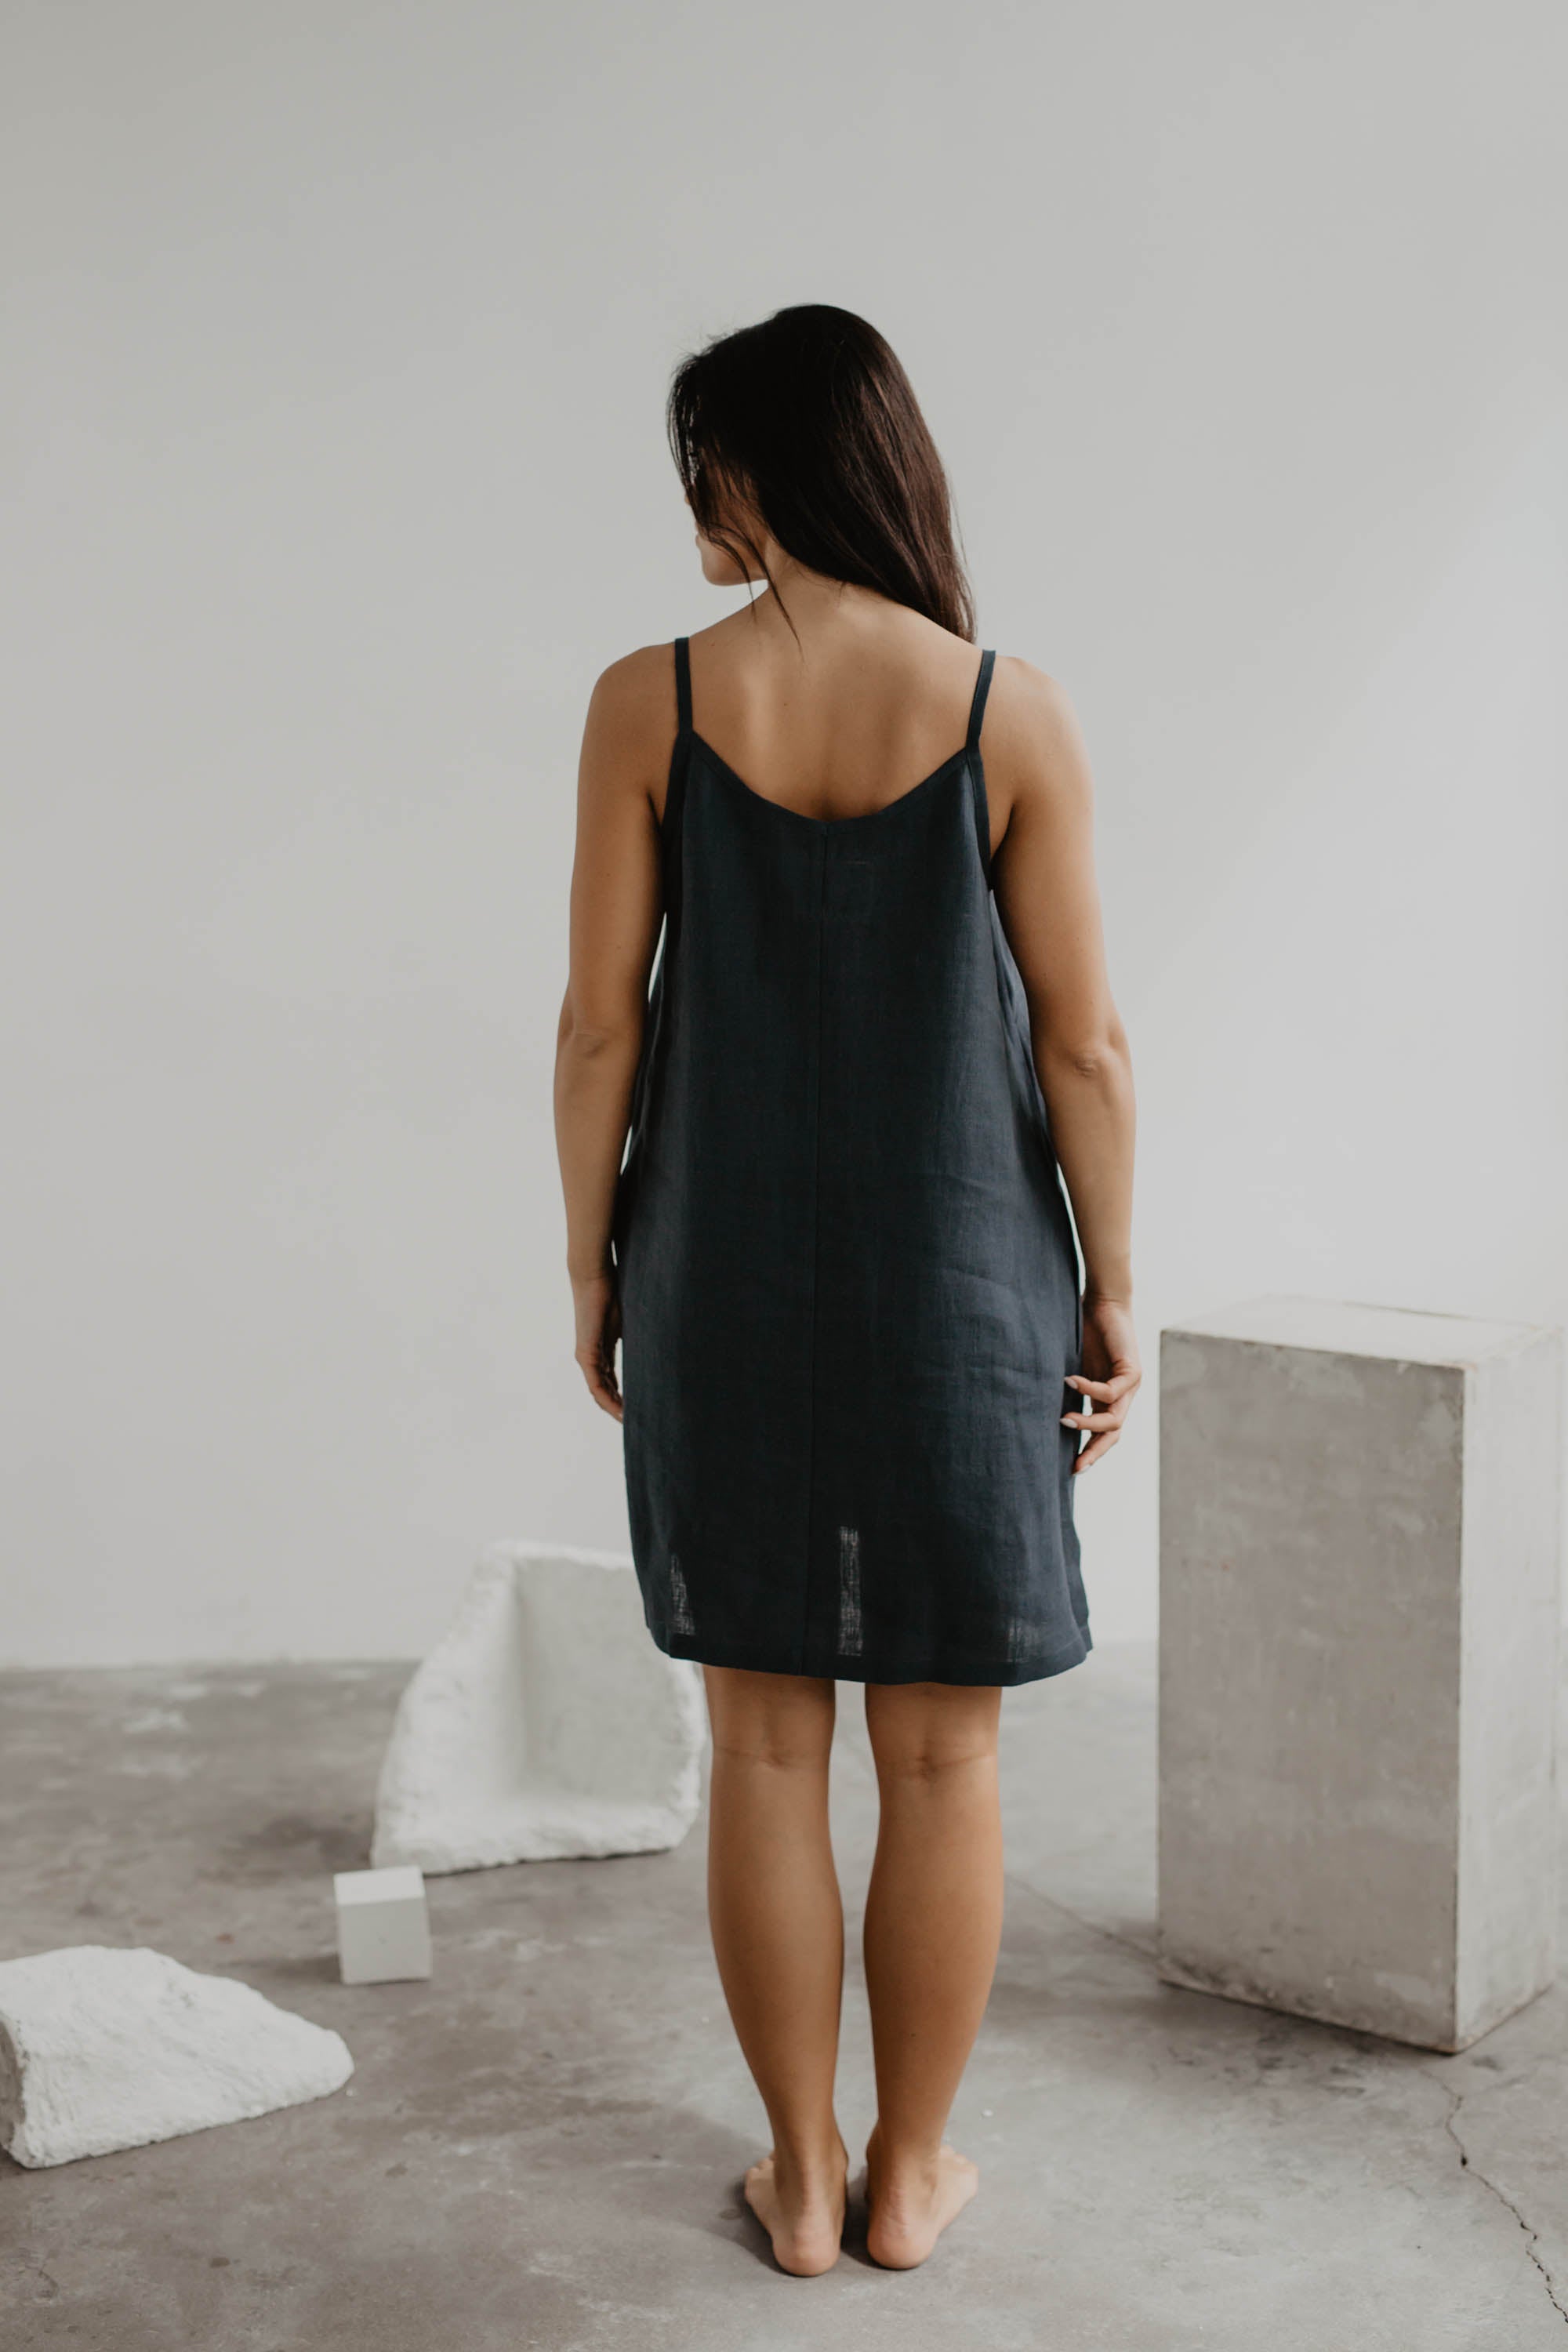 Back Of Women Wearing Black Slip Dress In Gallery by Amourlinen